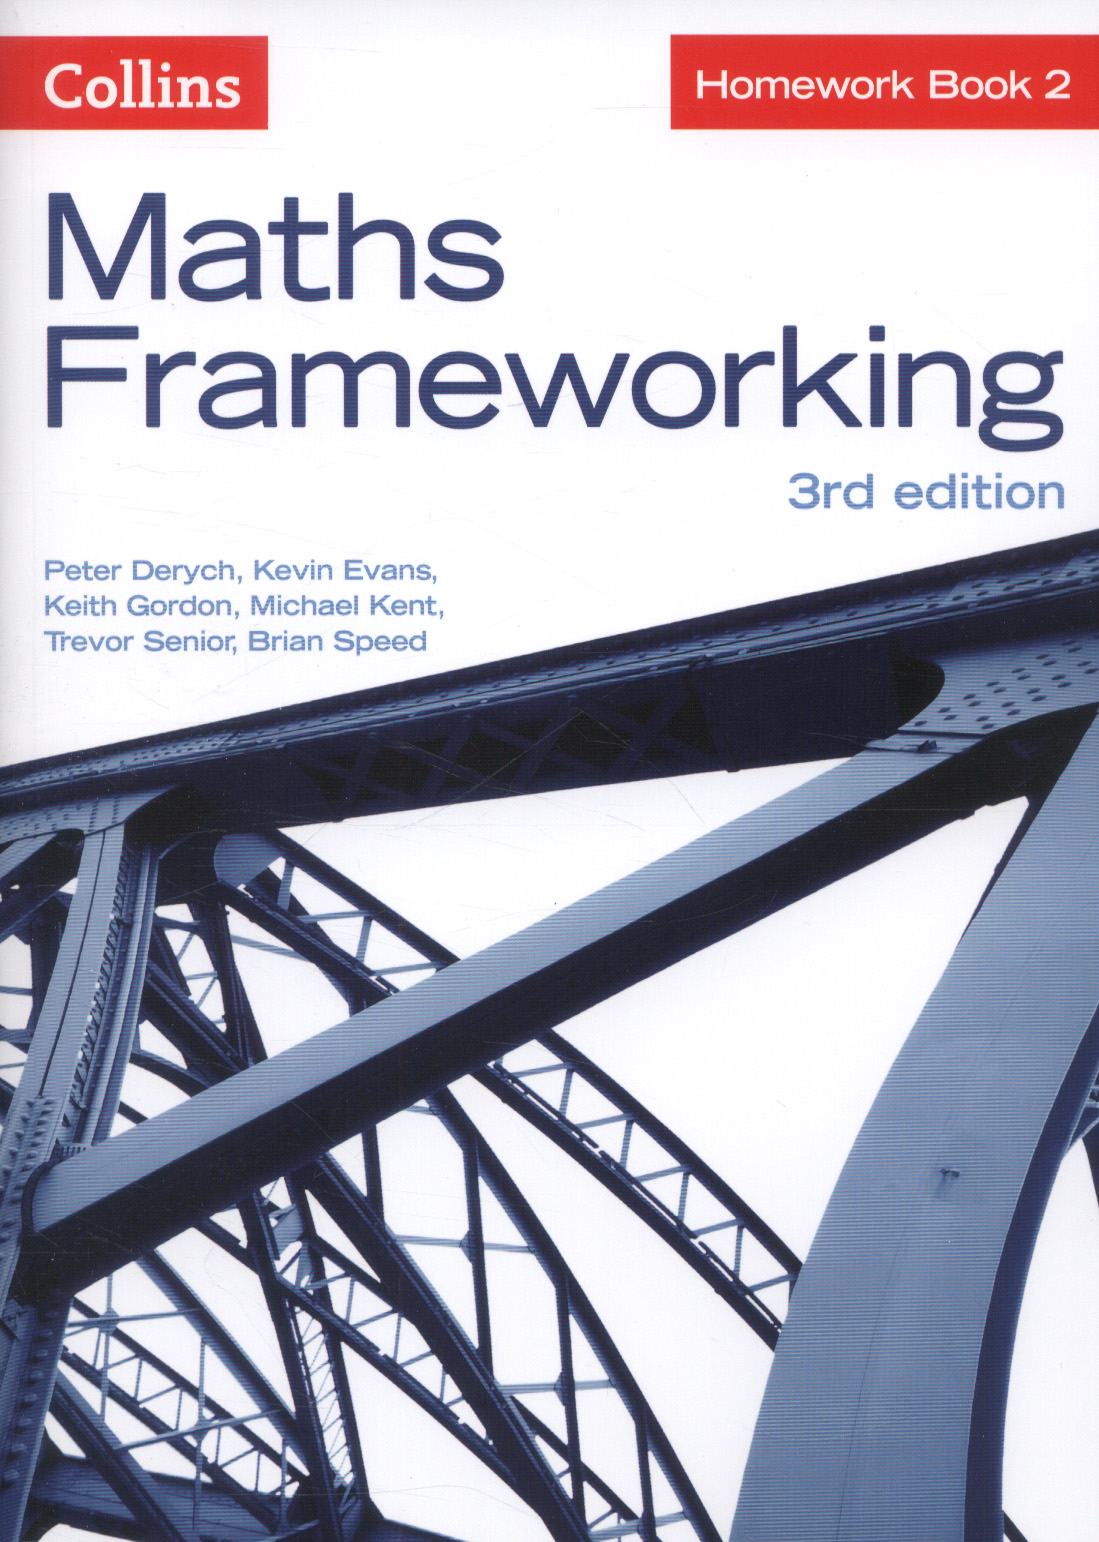 maths frameworking homework book 2 answers